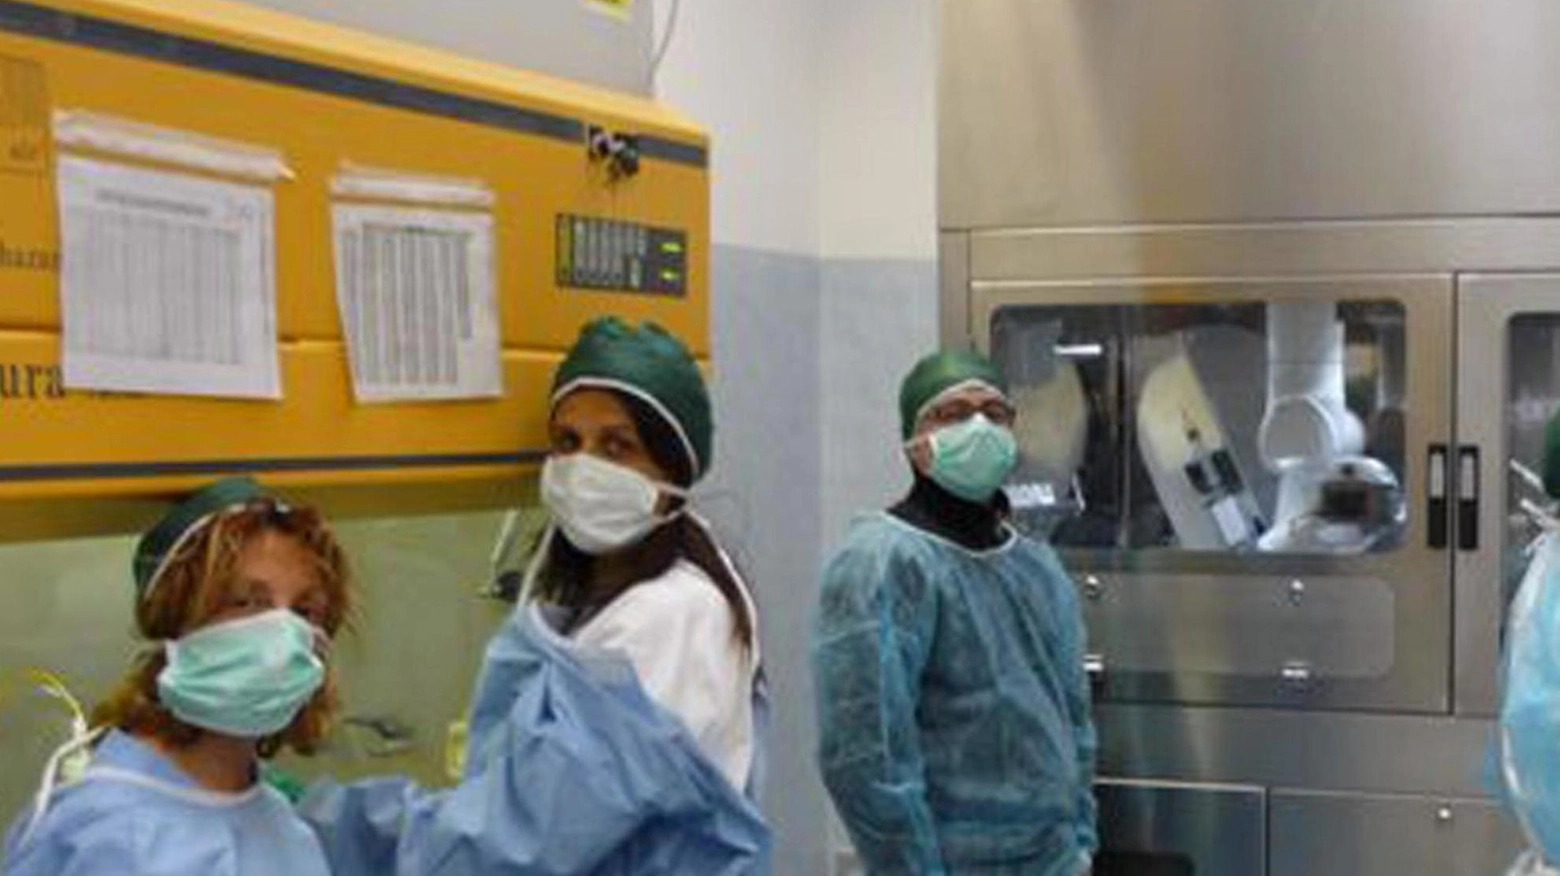 Disagi e burocrazia nella sanità  Odissea per un paziente oncologico  La protesta della famiglia